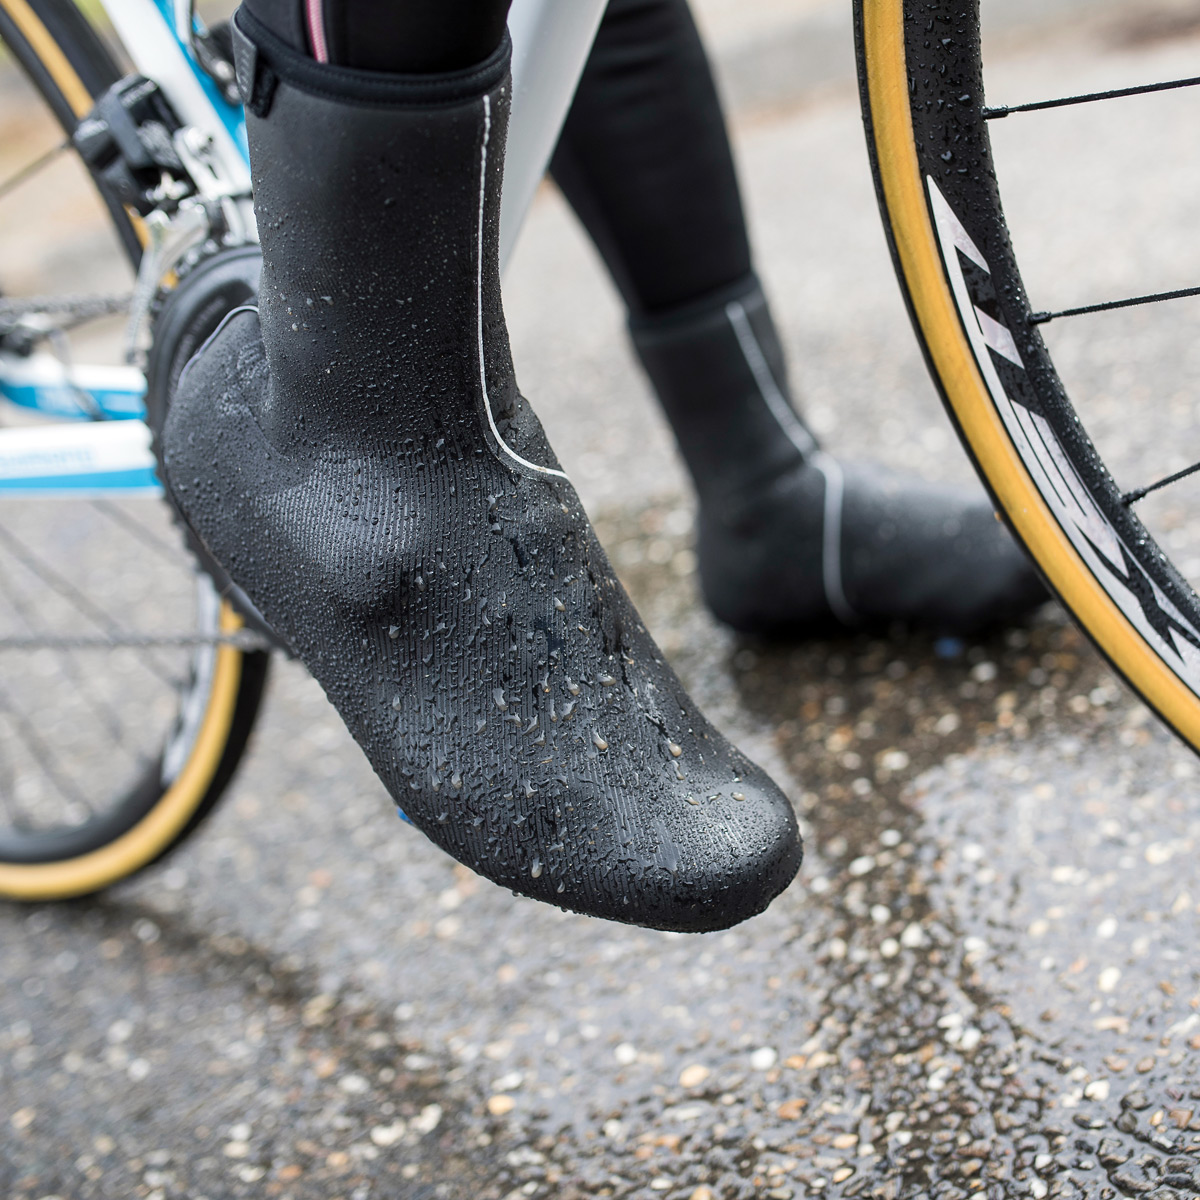 Ochraniacze na buty rowerowe – chronią przed zimnem i wilgocią.